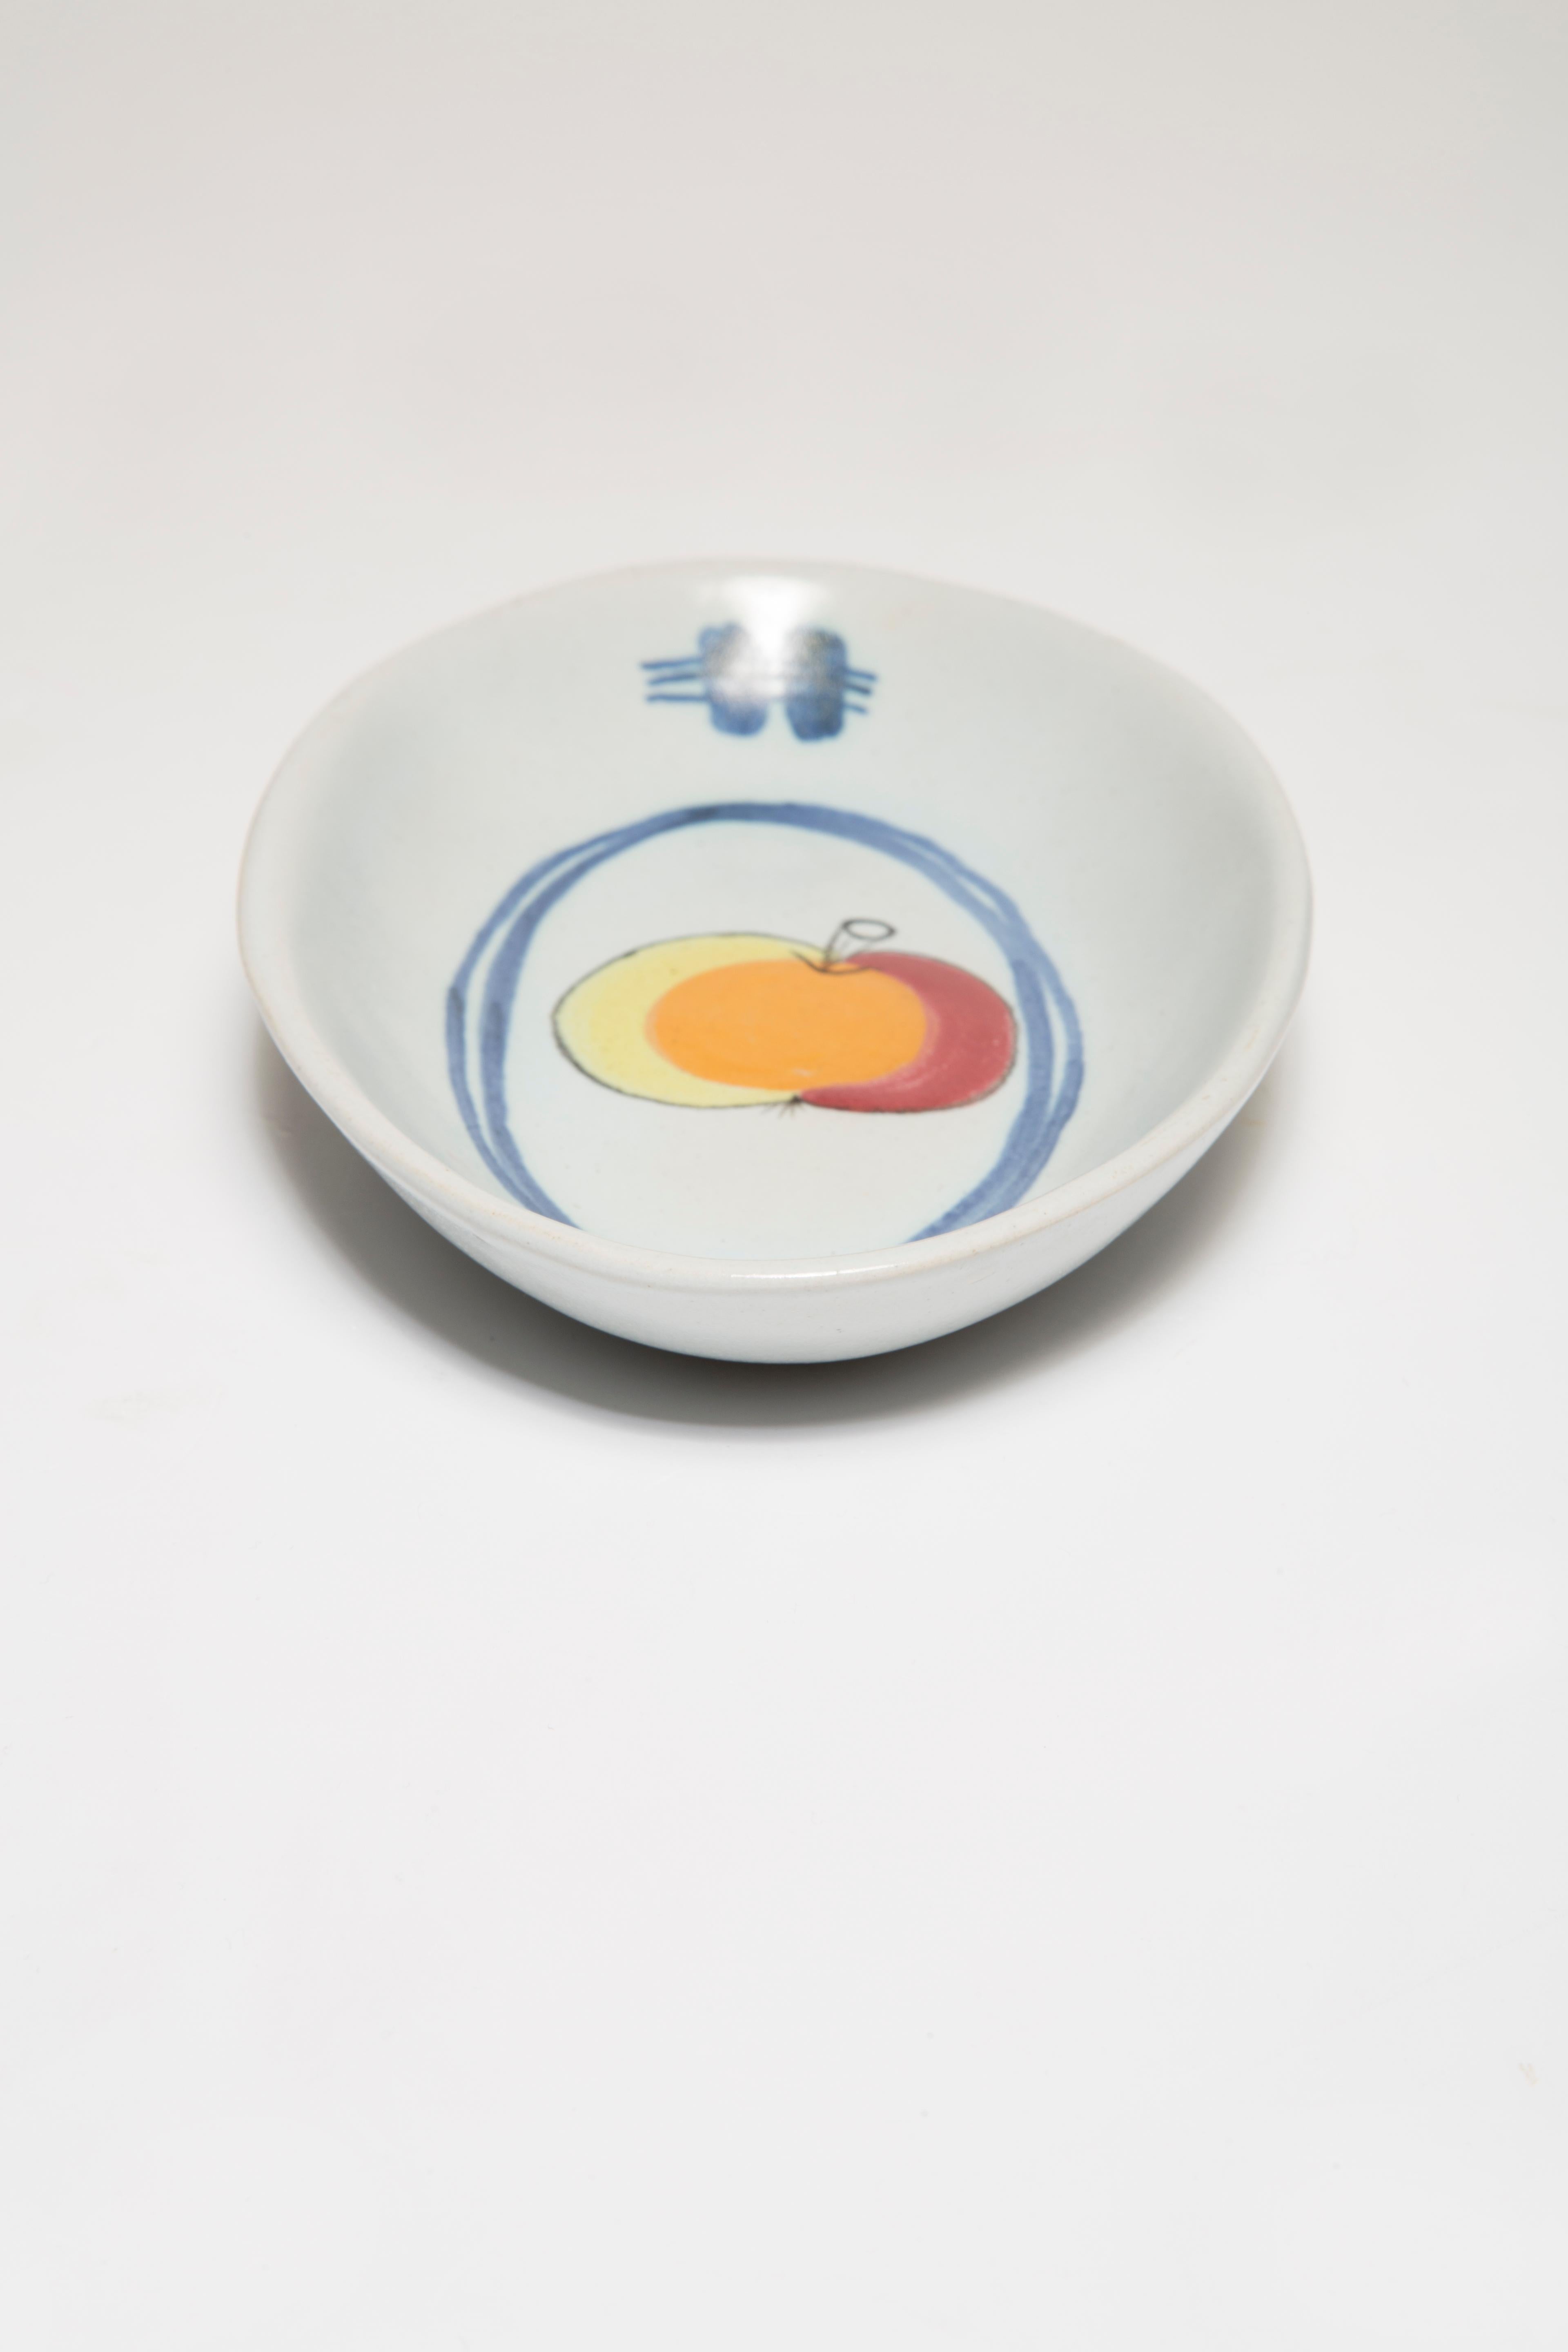 Mid Century Vintage Apple Decorative Porcelain Plate, Scotland, 1960s For Sale 6